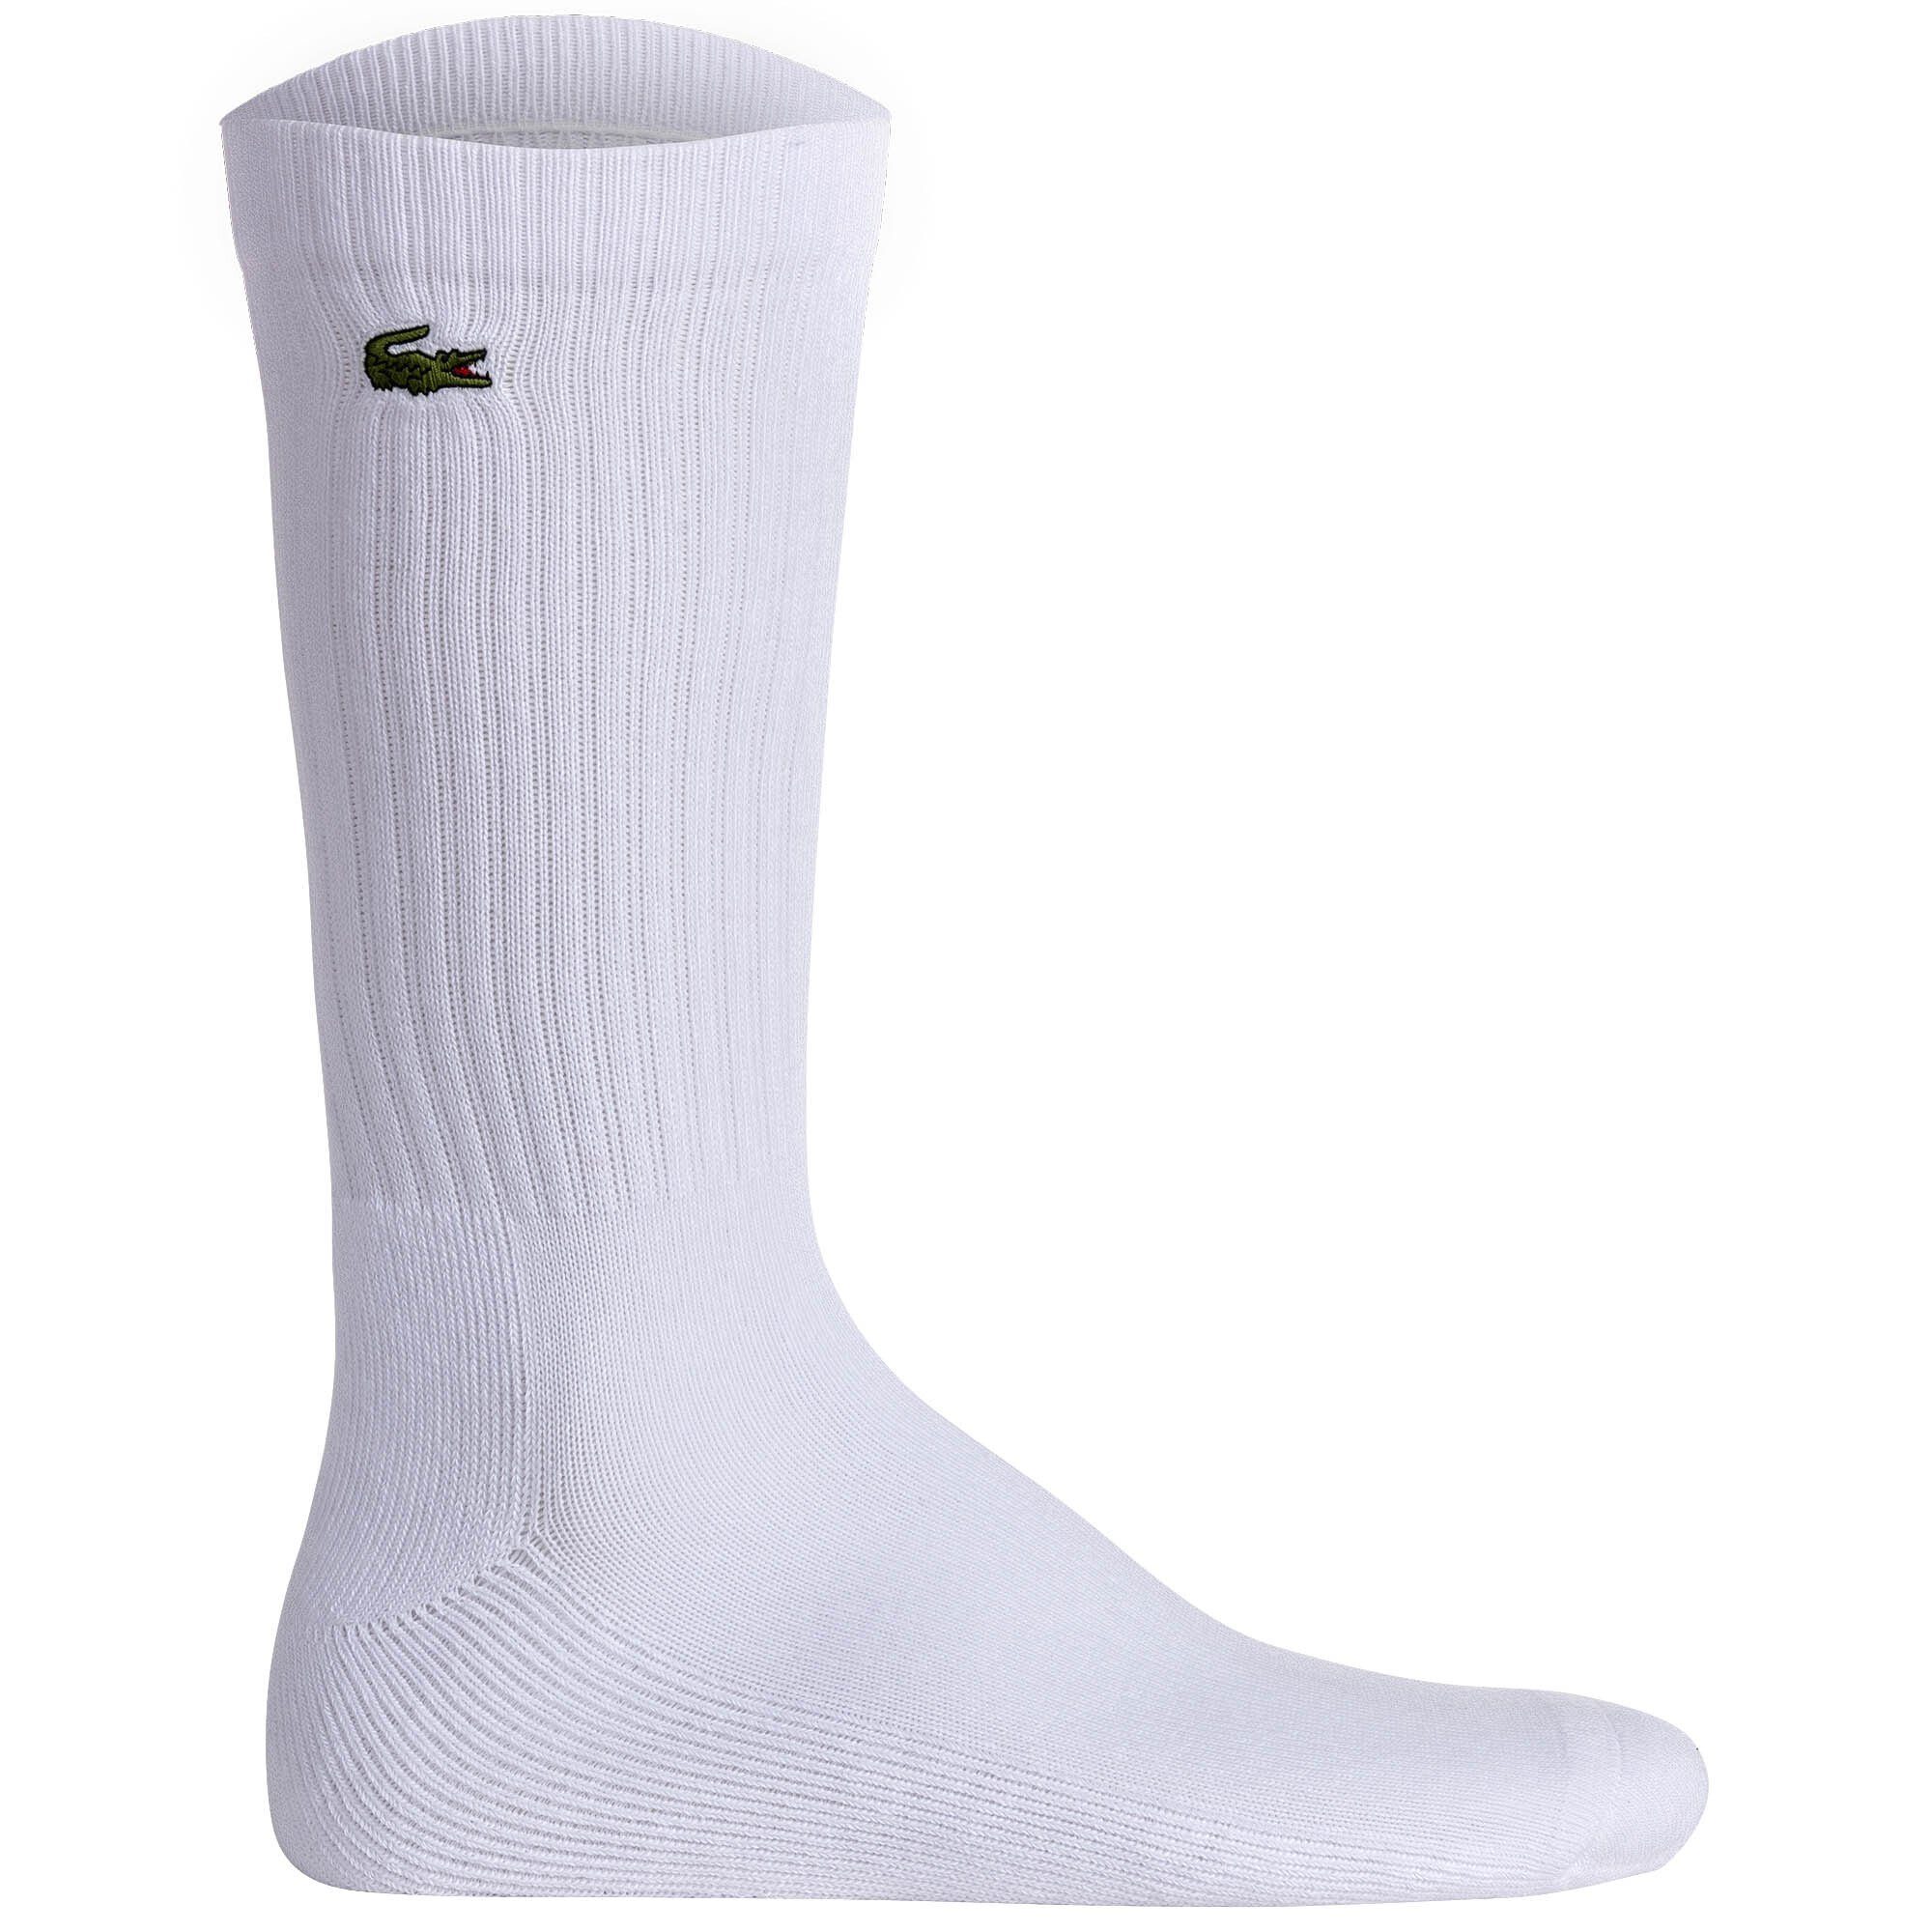 Kurzsocken Weiß/Grau/Dunkelblau Tennissocken Unisex 3er Socken, Pack Lacoste -